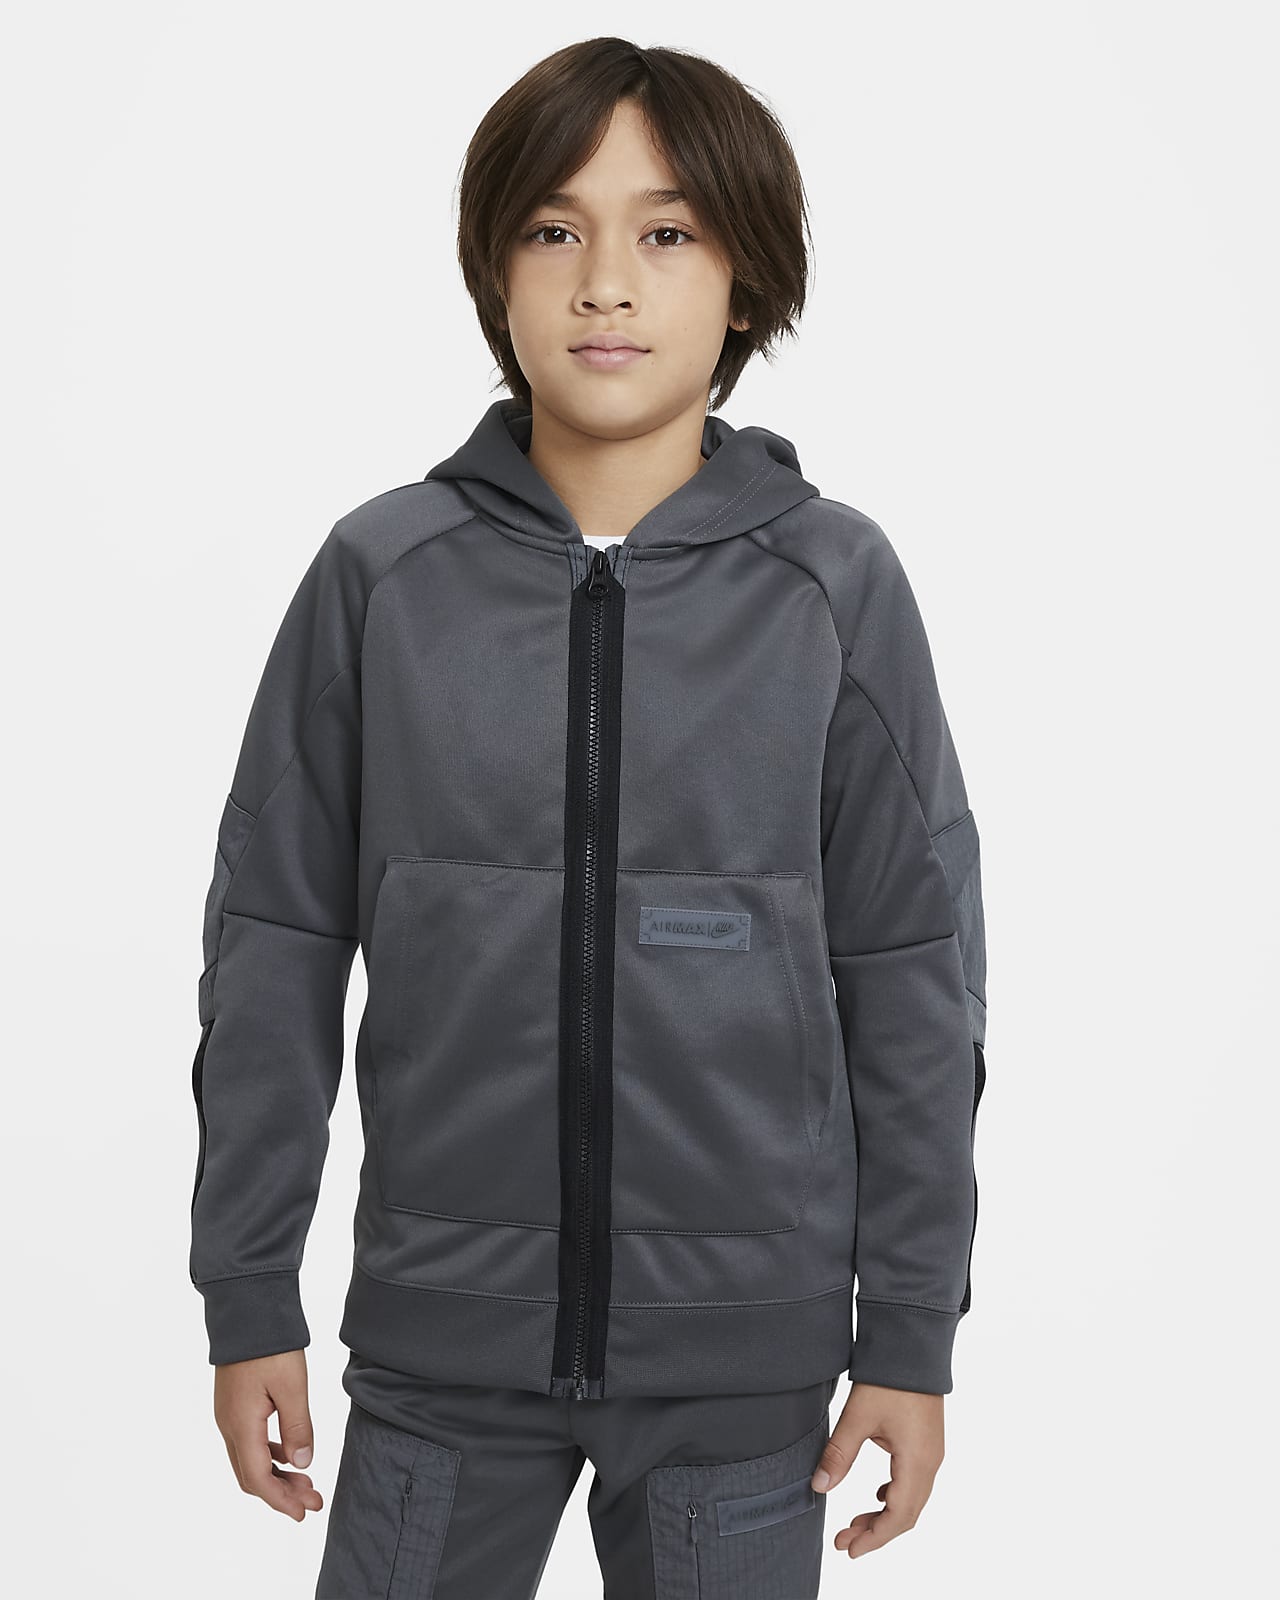 Mikina s kapucí Nike Sportswear Air Max a zipem po celé délce pro větší děti (chlapce)